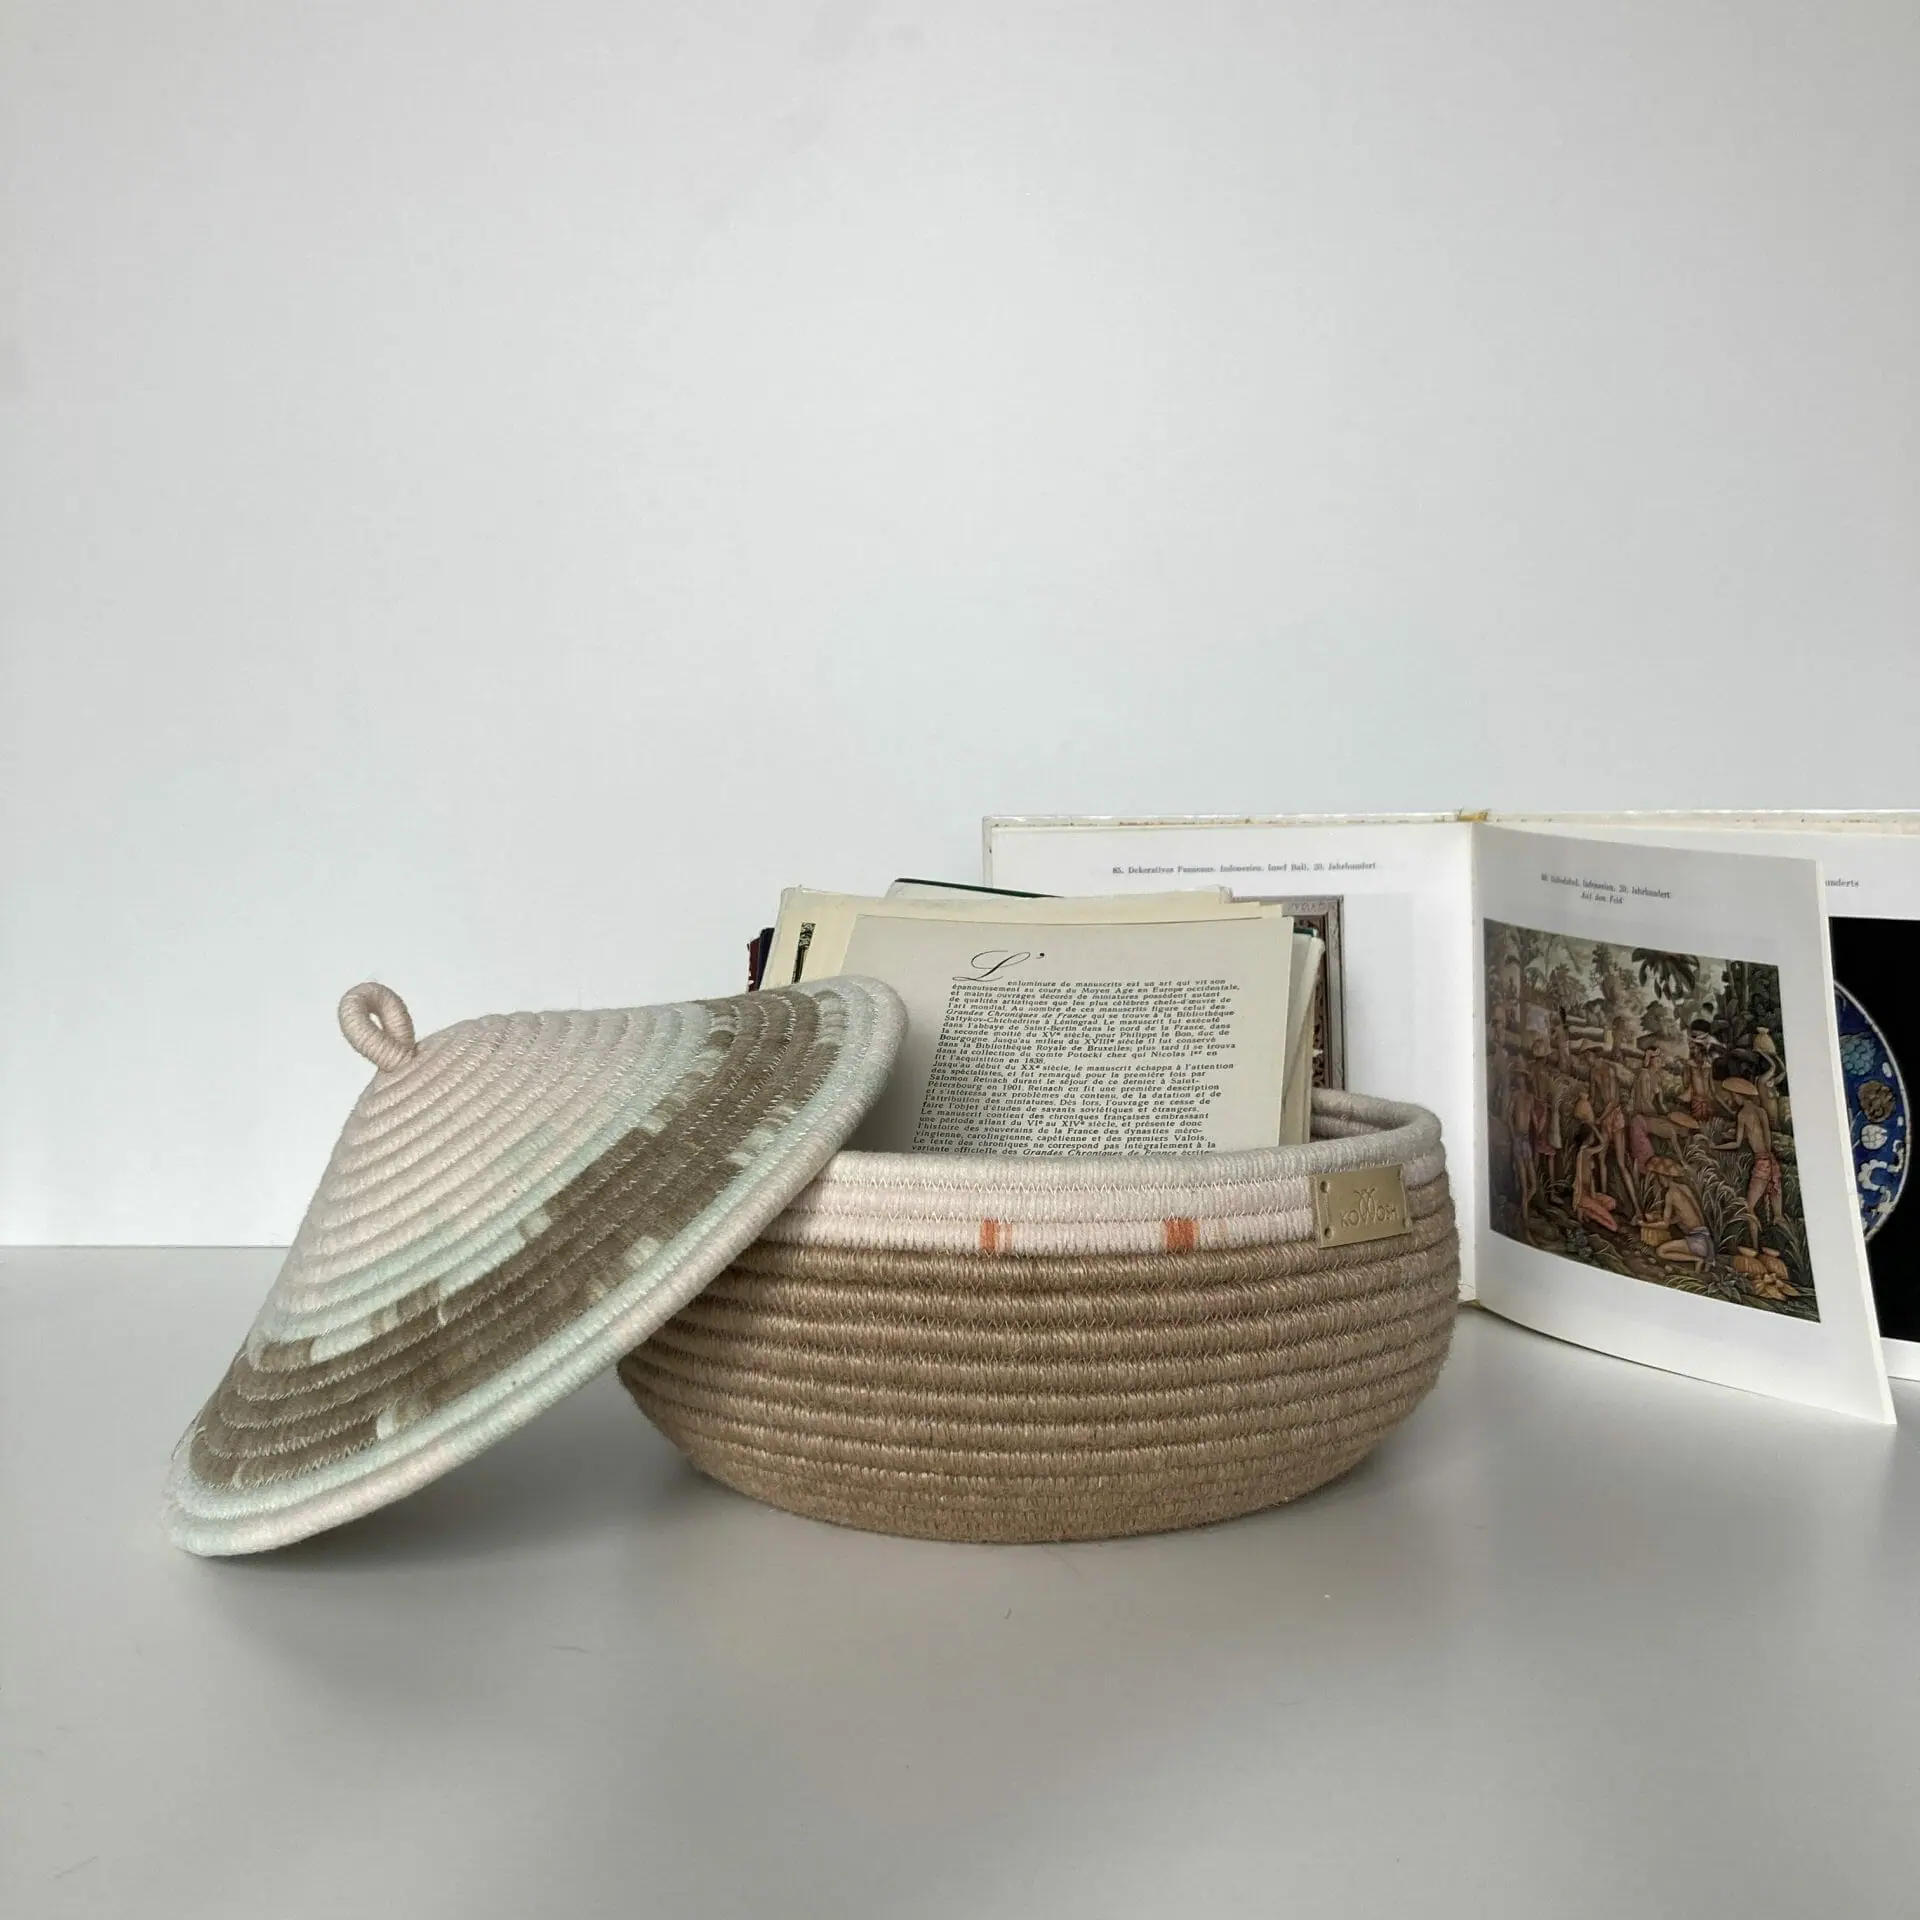 Jute Storage basket with lid 19 cm x 23 cm x 10 cm